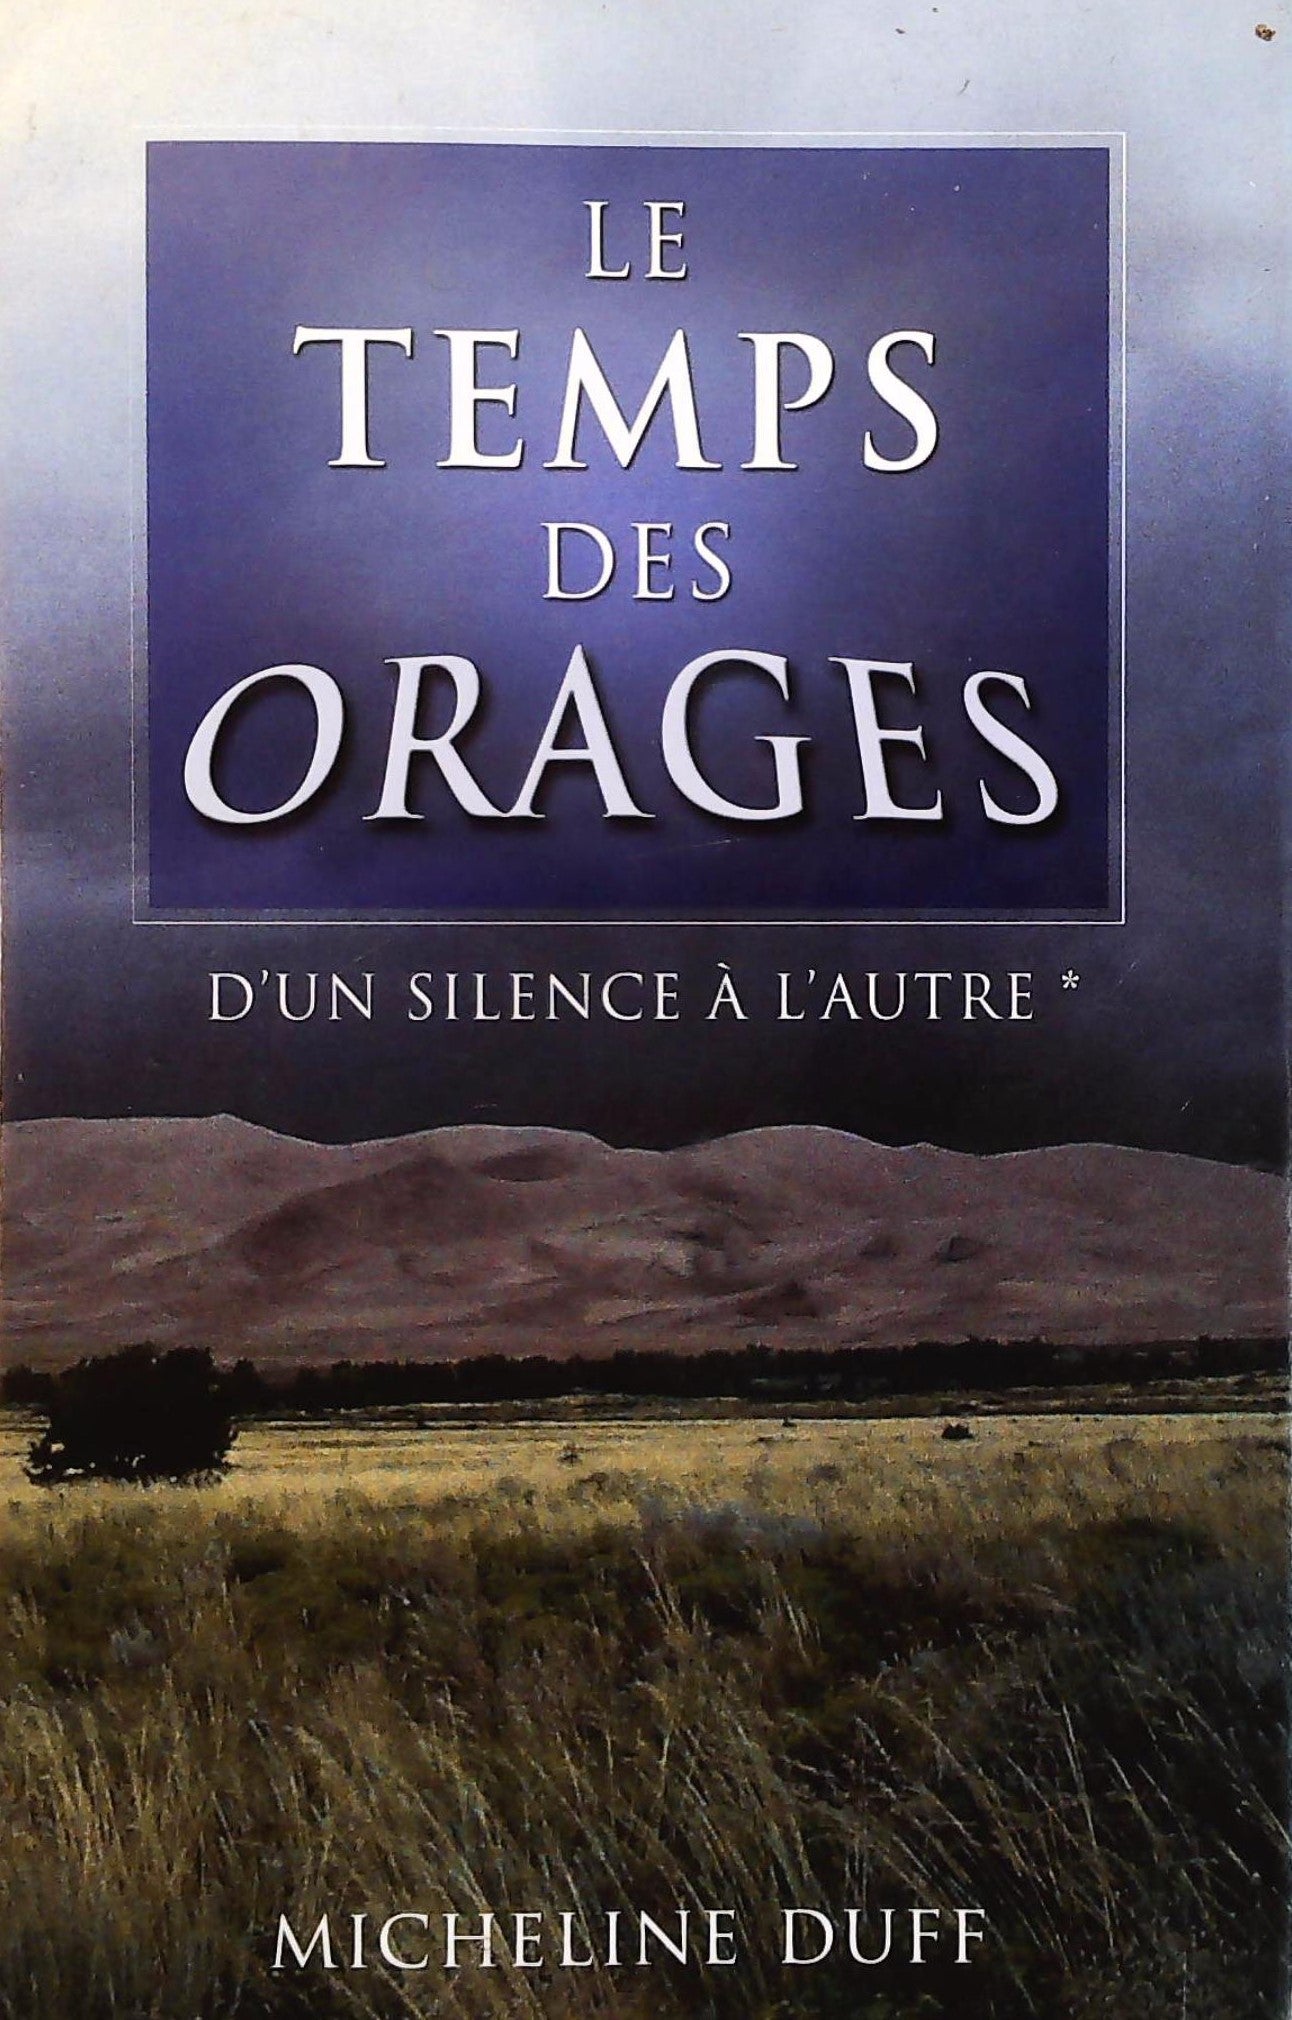 Livre ISBN 2894308043 D'un silence à l'autre # 1 : Le temps des orages (Micheline Duff)